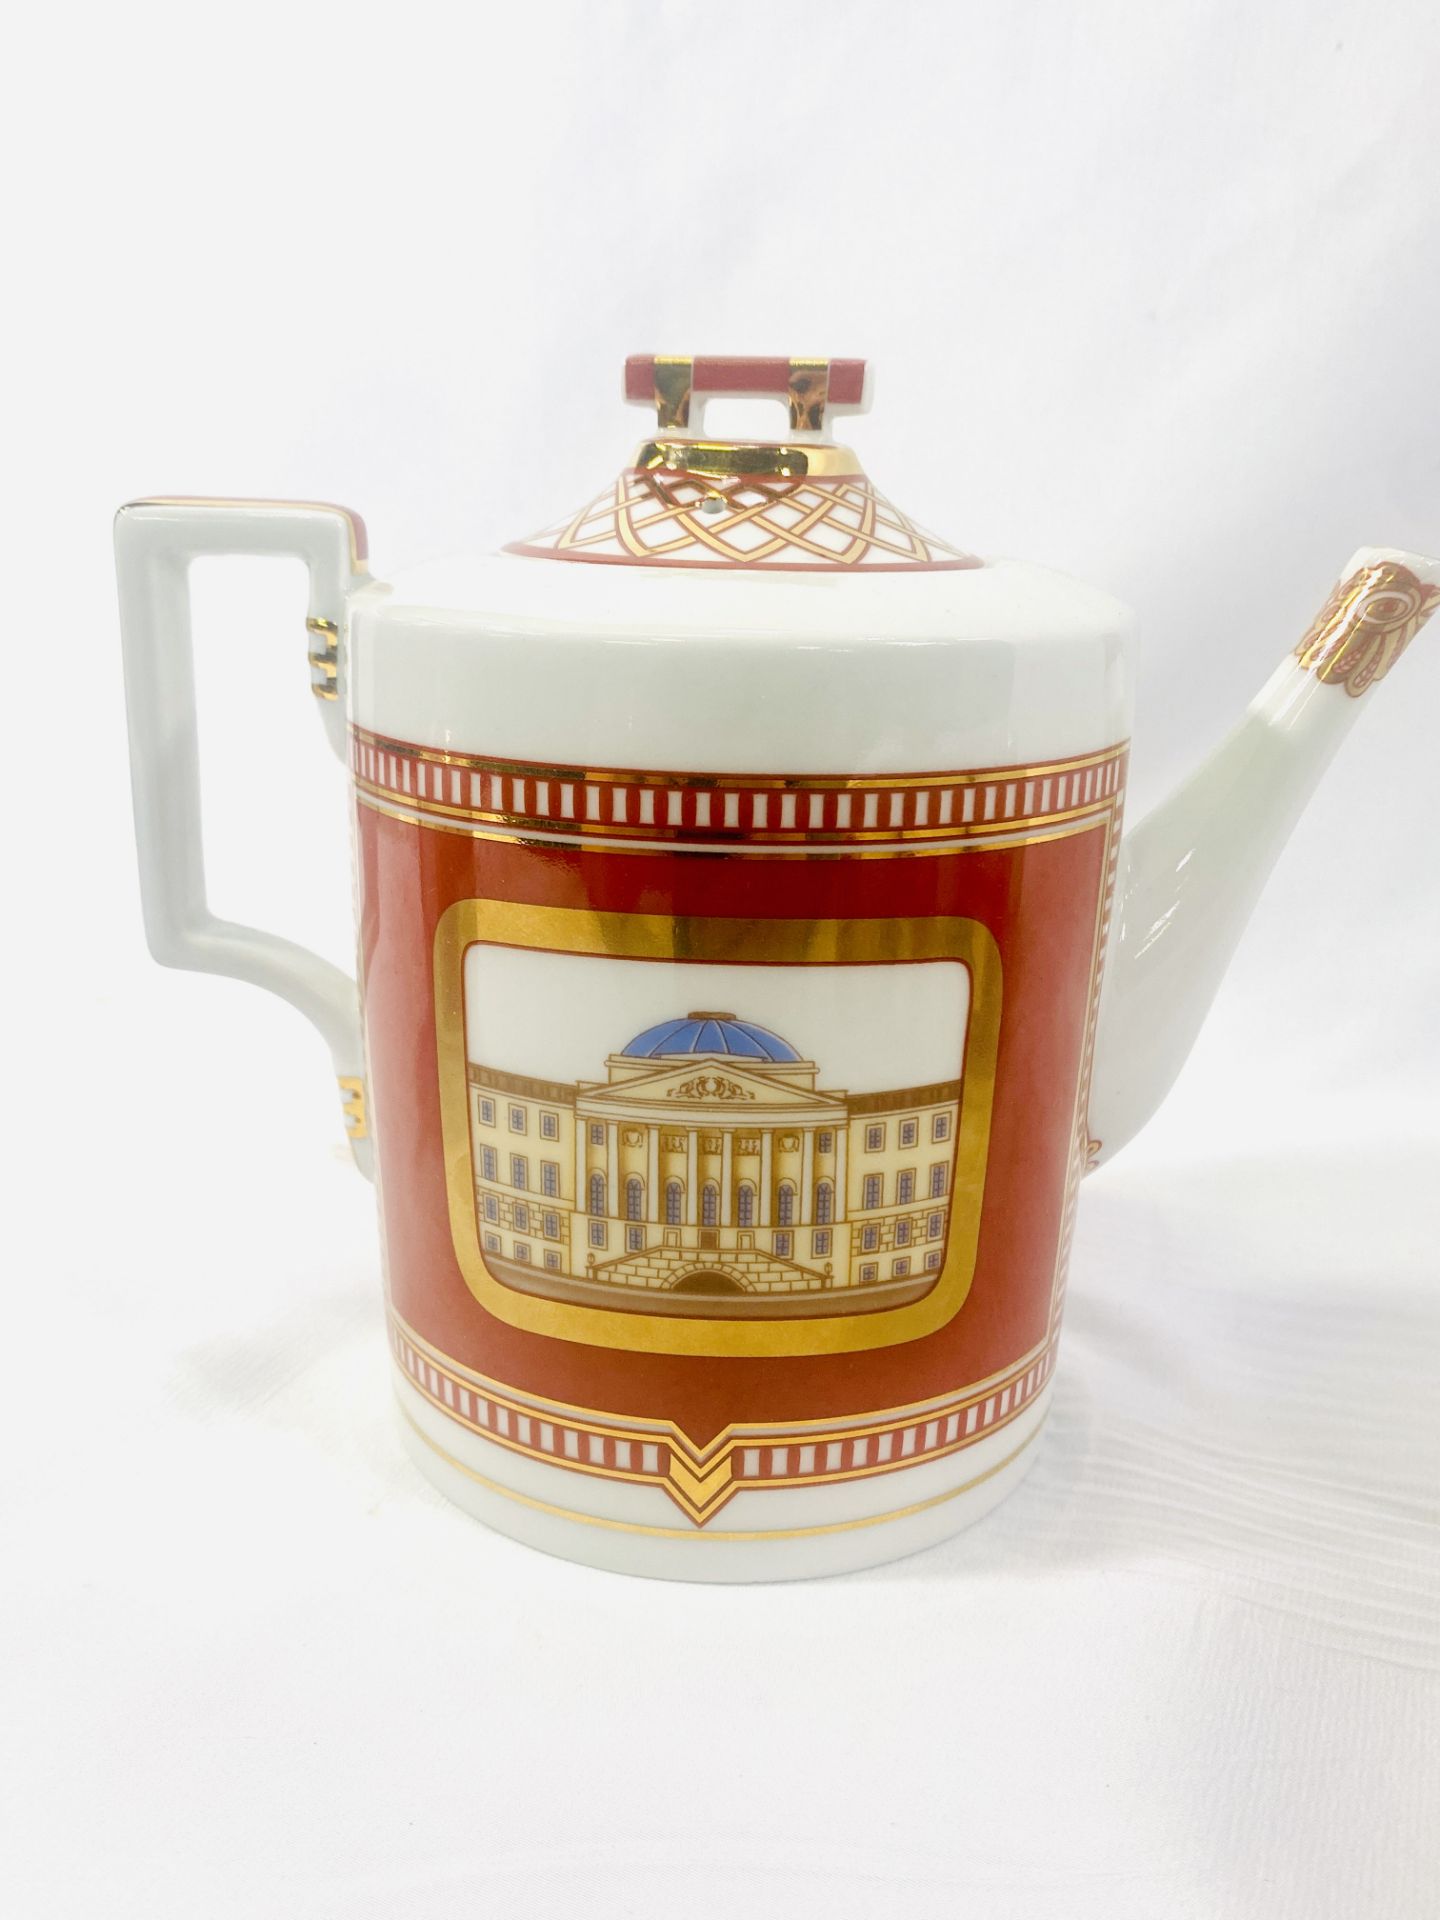 Imperial Porcelain tea set - Image 3 of 12